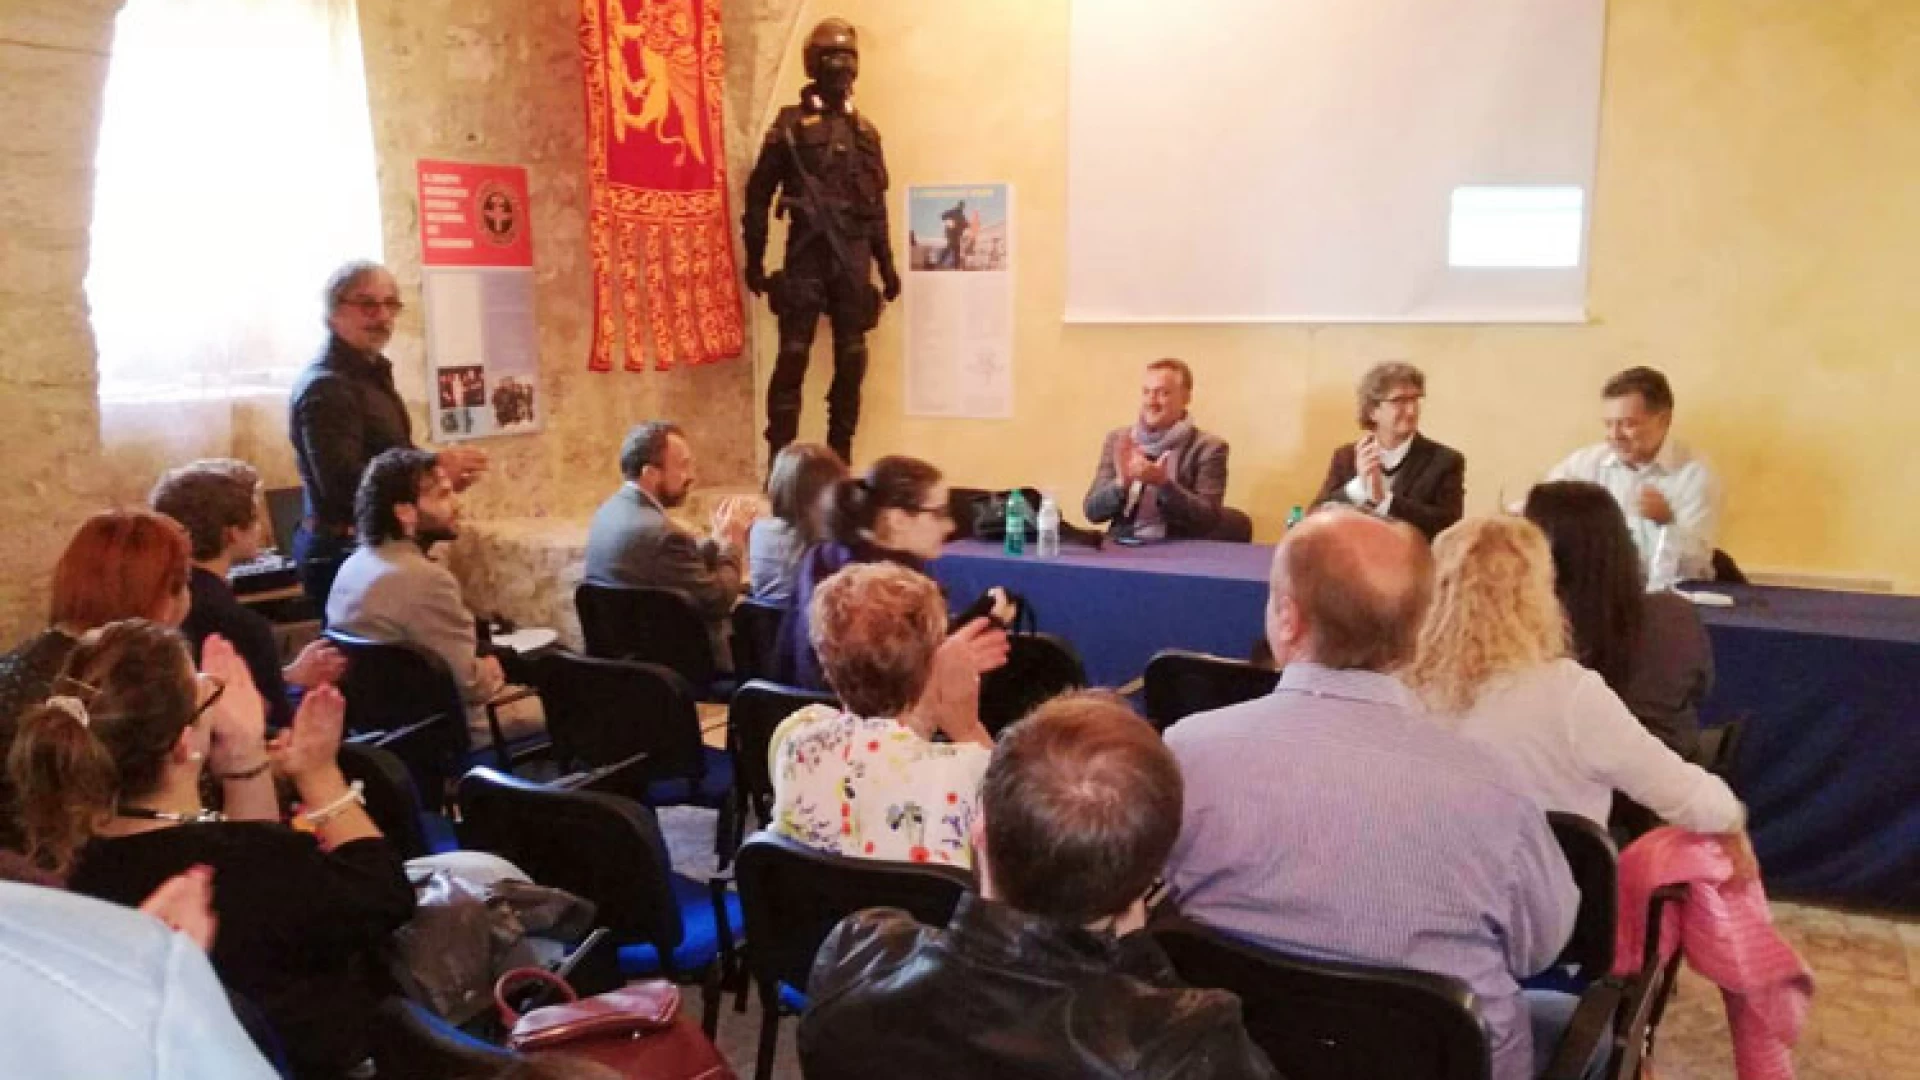 Rocchetta a Volturno: successo per la Summer School al Museo Internazionale delle Guerre Mondiali- Studenti e professori a confronto sulla storia.